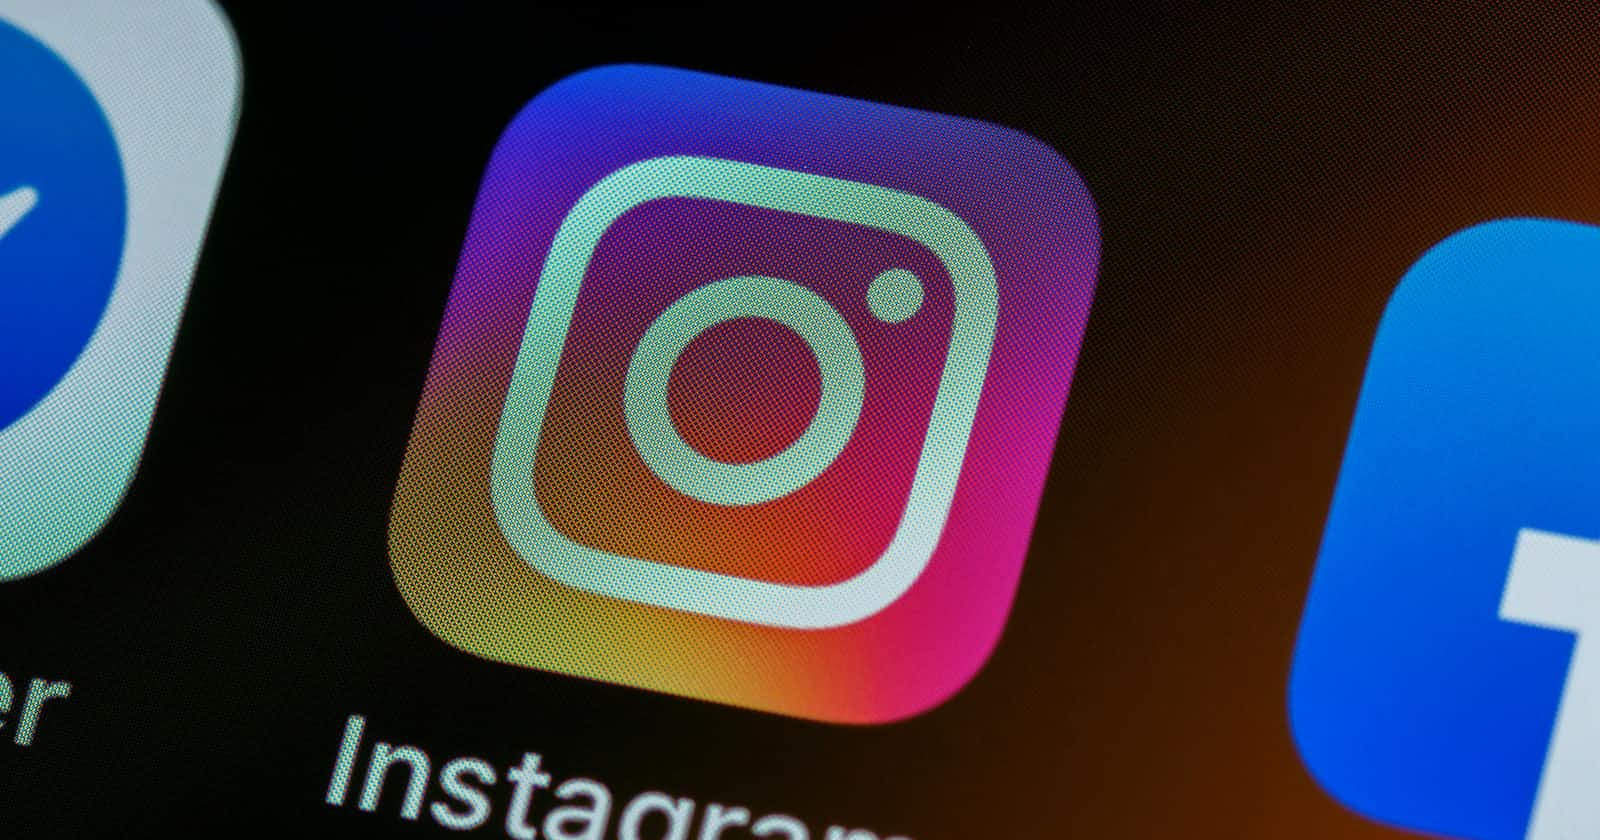 The dark truth about Instagram